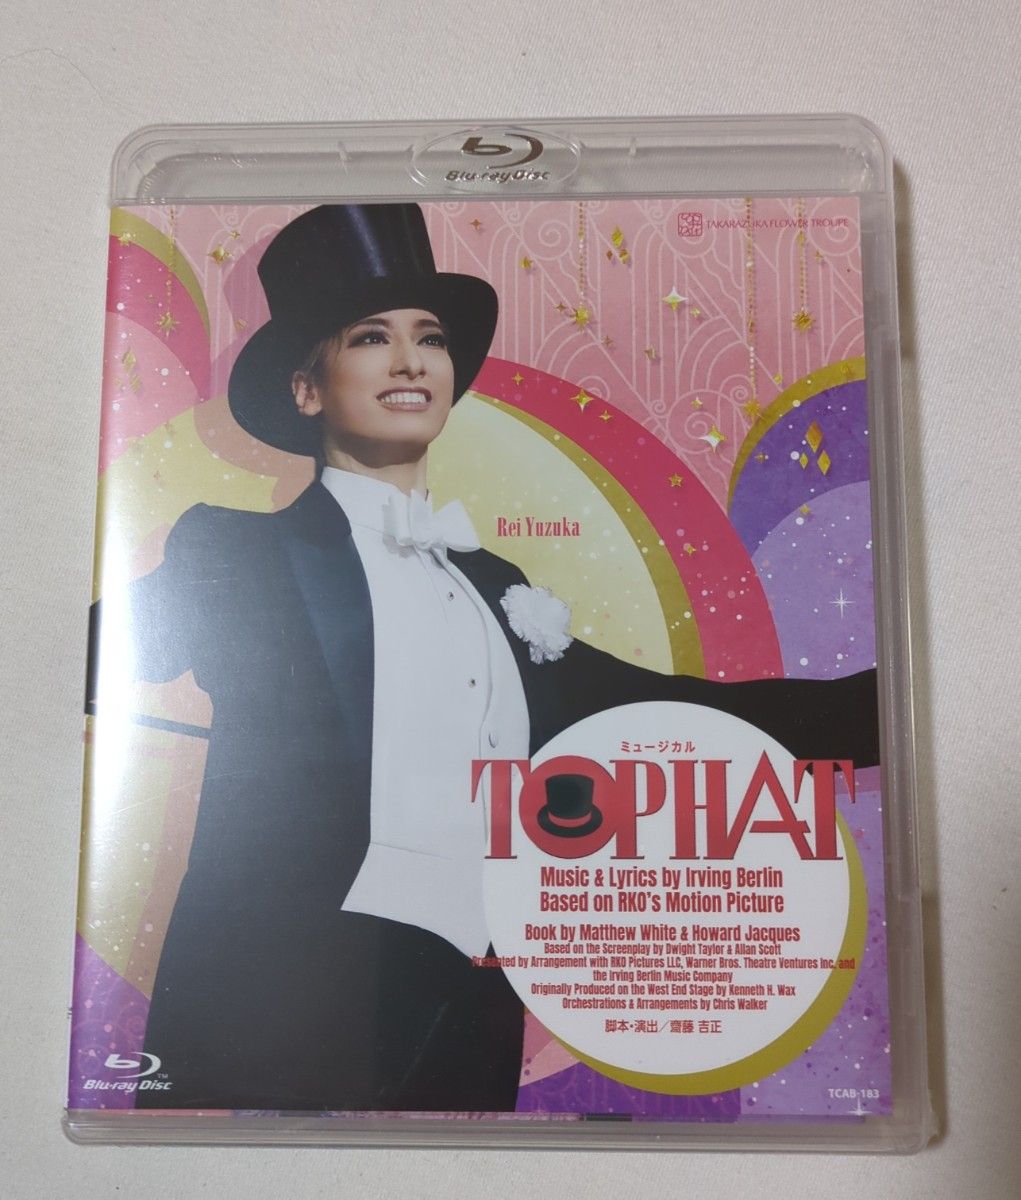 宝塚 花組『TOP HAT』 Blu-ray 柚香光